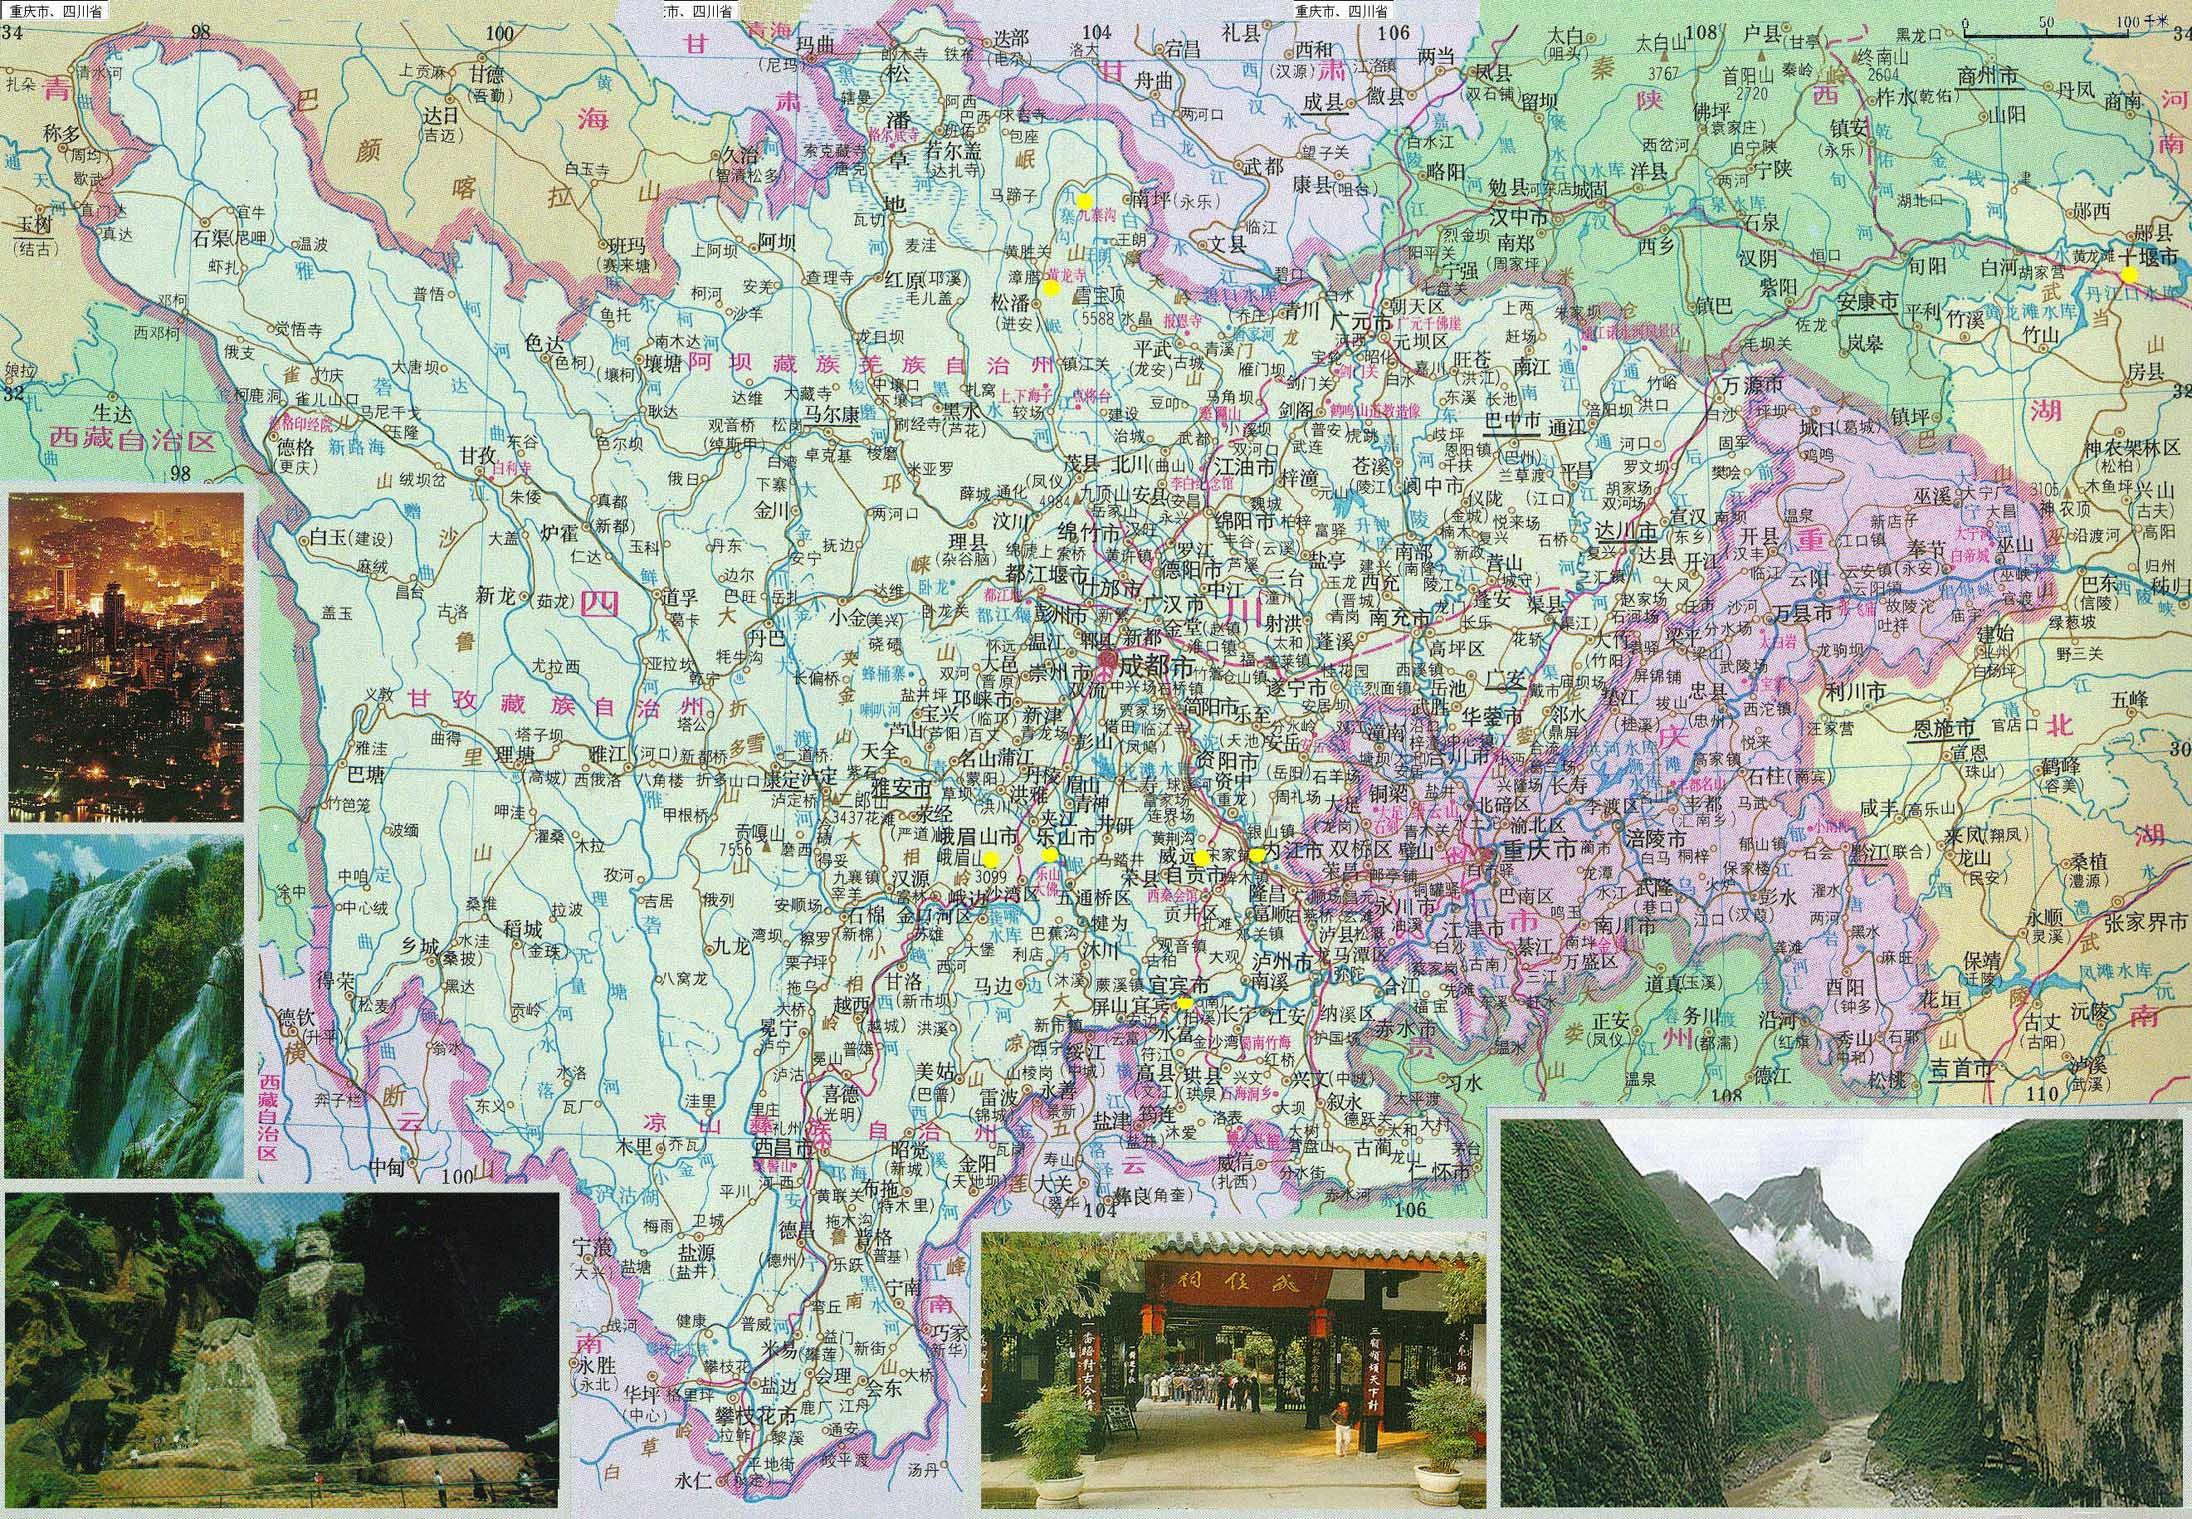 四川 >> 四川地图全图  相关链接: 中国  北京  上海  天津  重庆图片